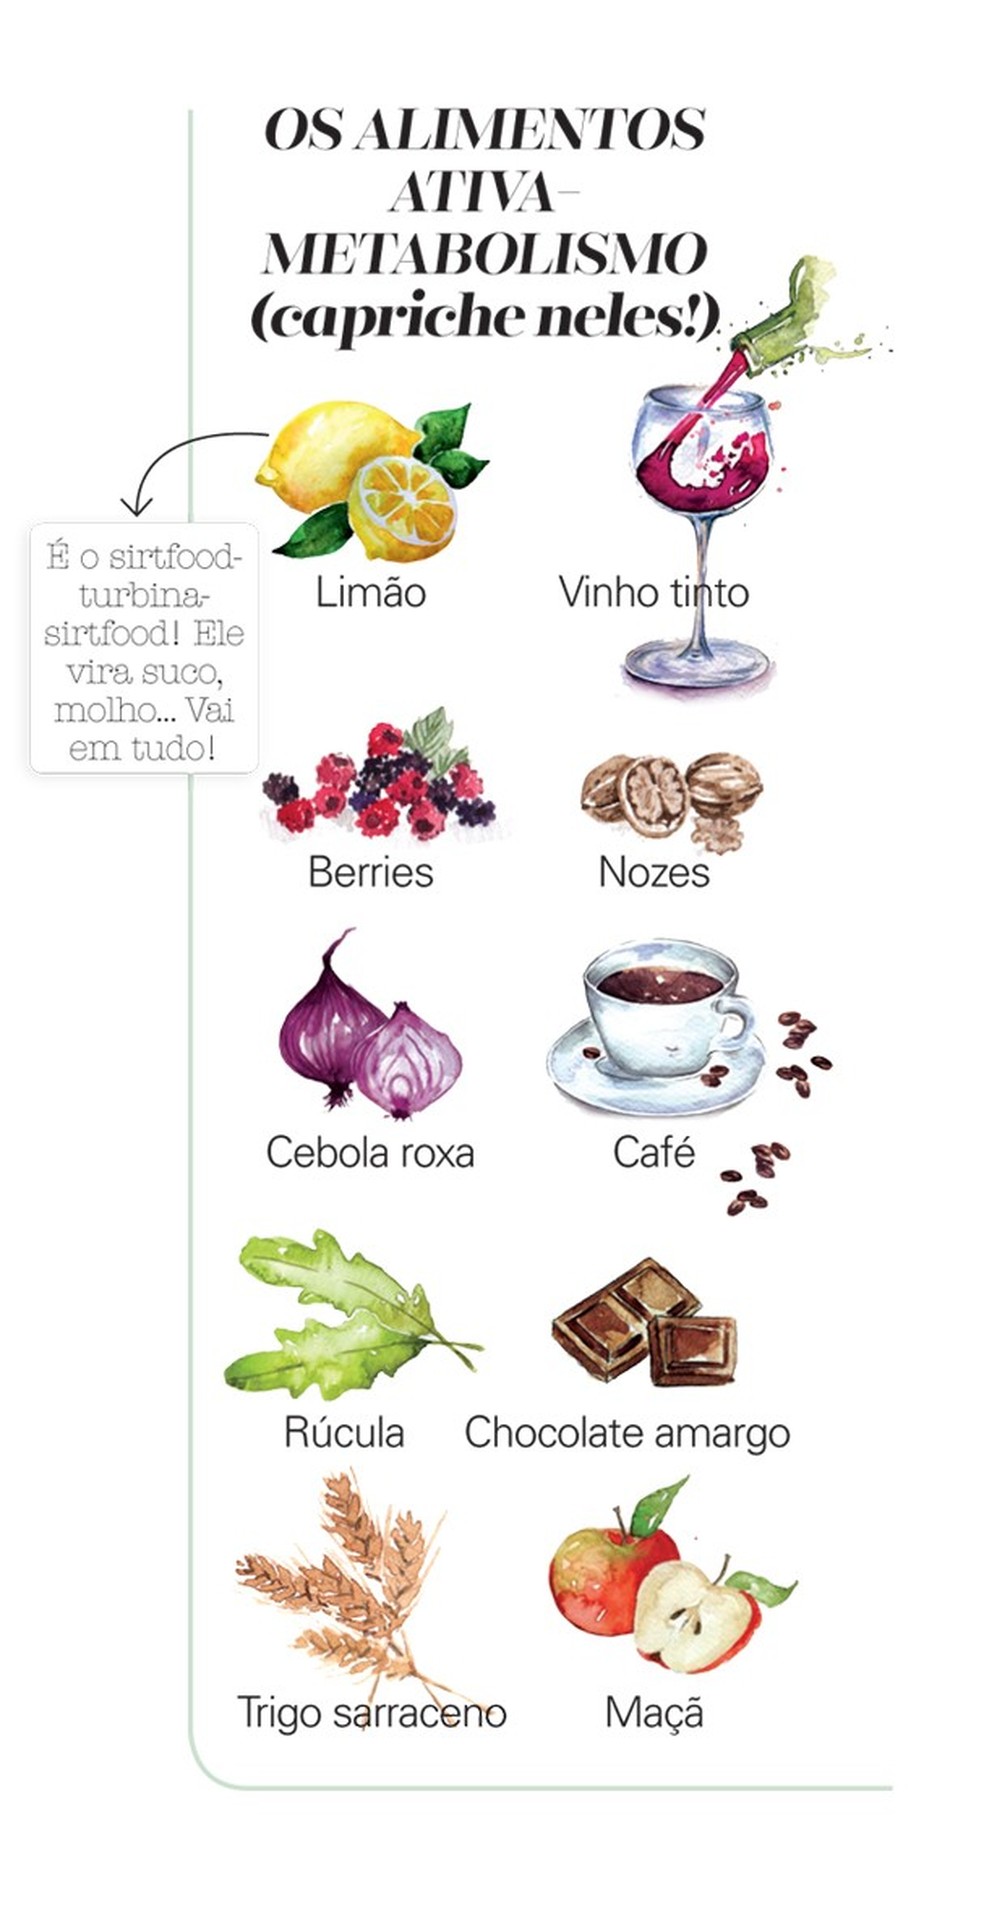 Os alimentos ativa-metabolismo (Foto: Ilustrações Camila Gray) — Foto: Glamour